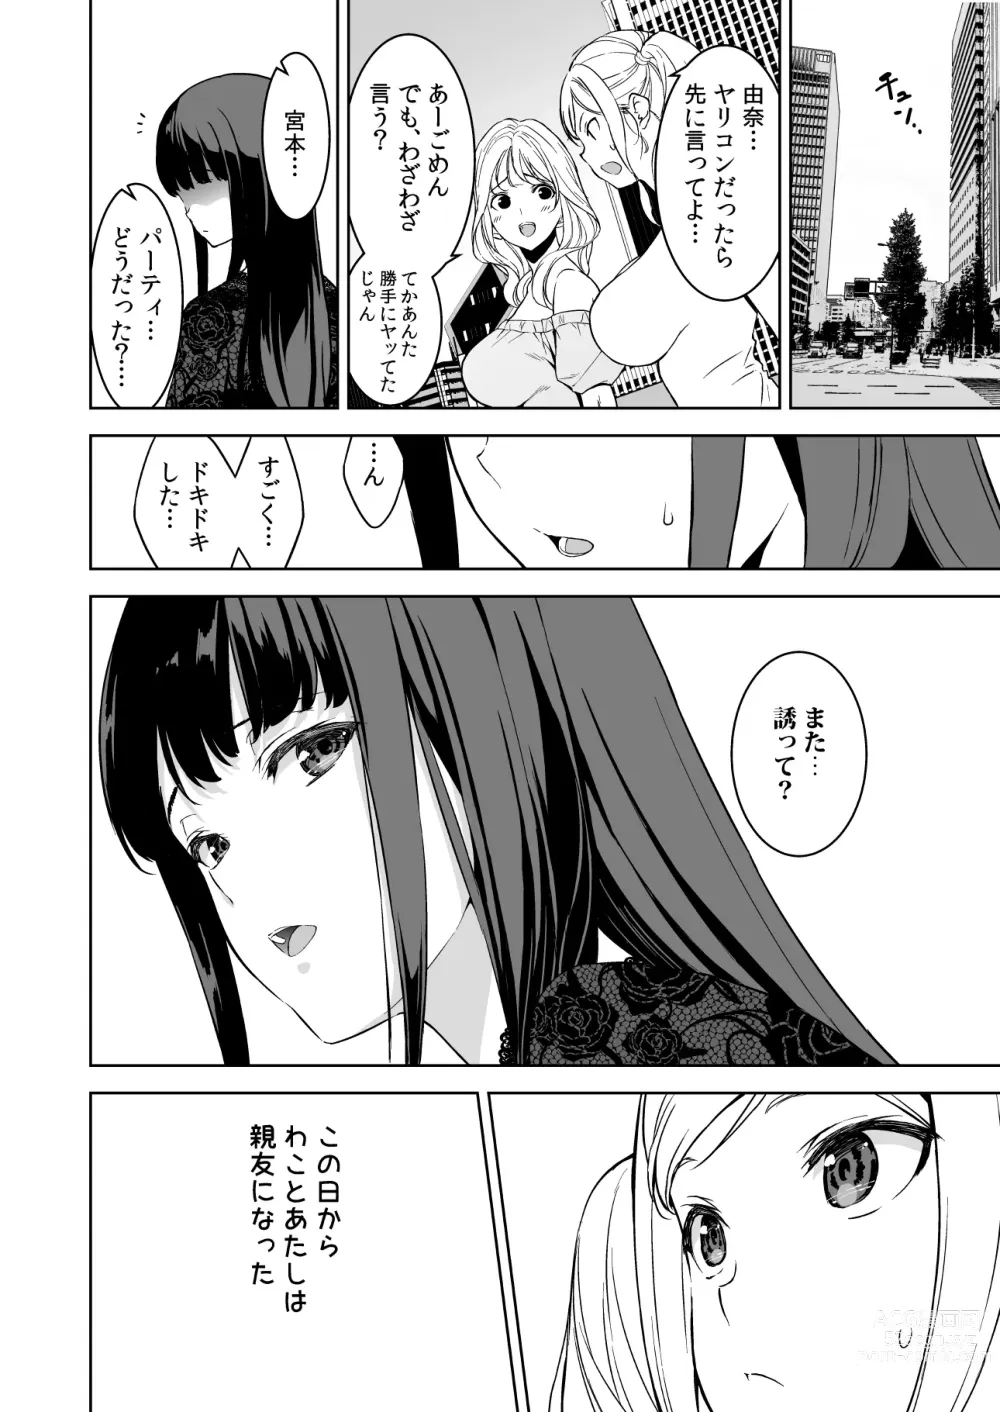 Page 35 of doujinshi Ane to Bitch no Hito ni wa Ienai Minatoku Tawaman Party Night